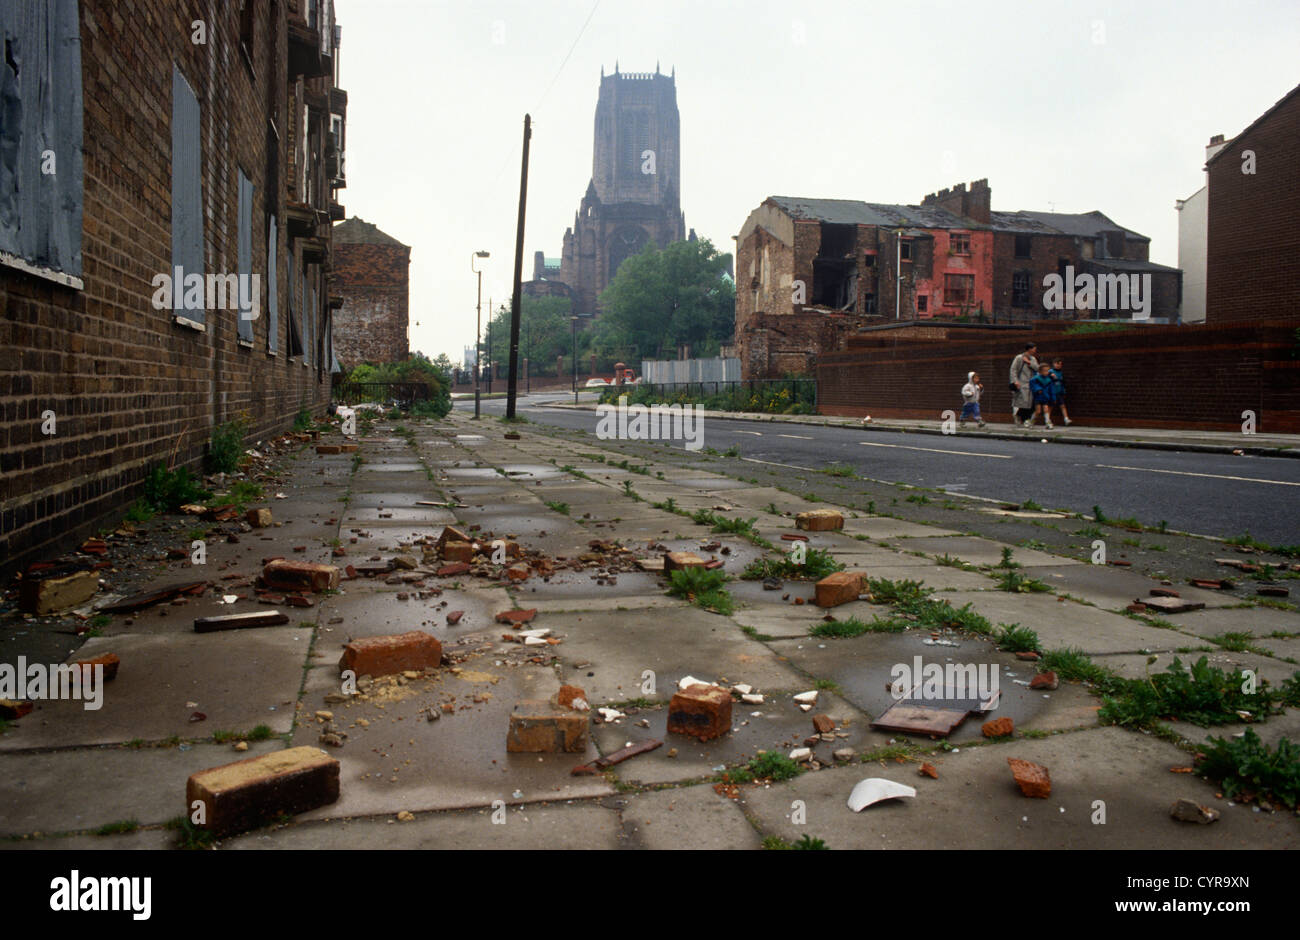 Un basso, ampio paesaggio di abbandono e di povertà durante i primi anni novanta nella città di Liverpool, in Inghilterra. Foto Stock